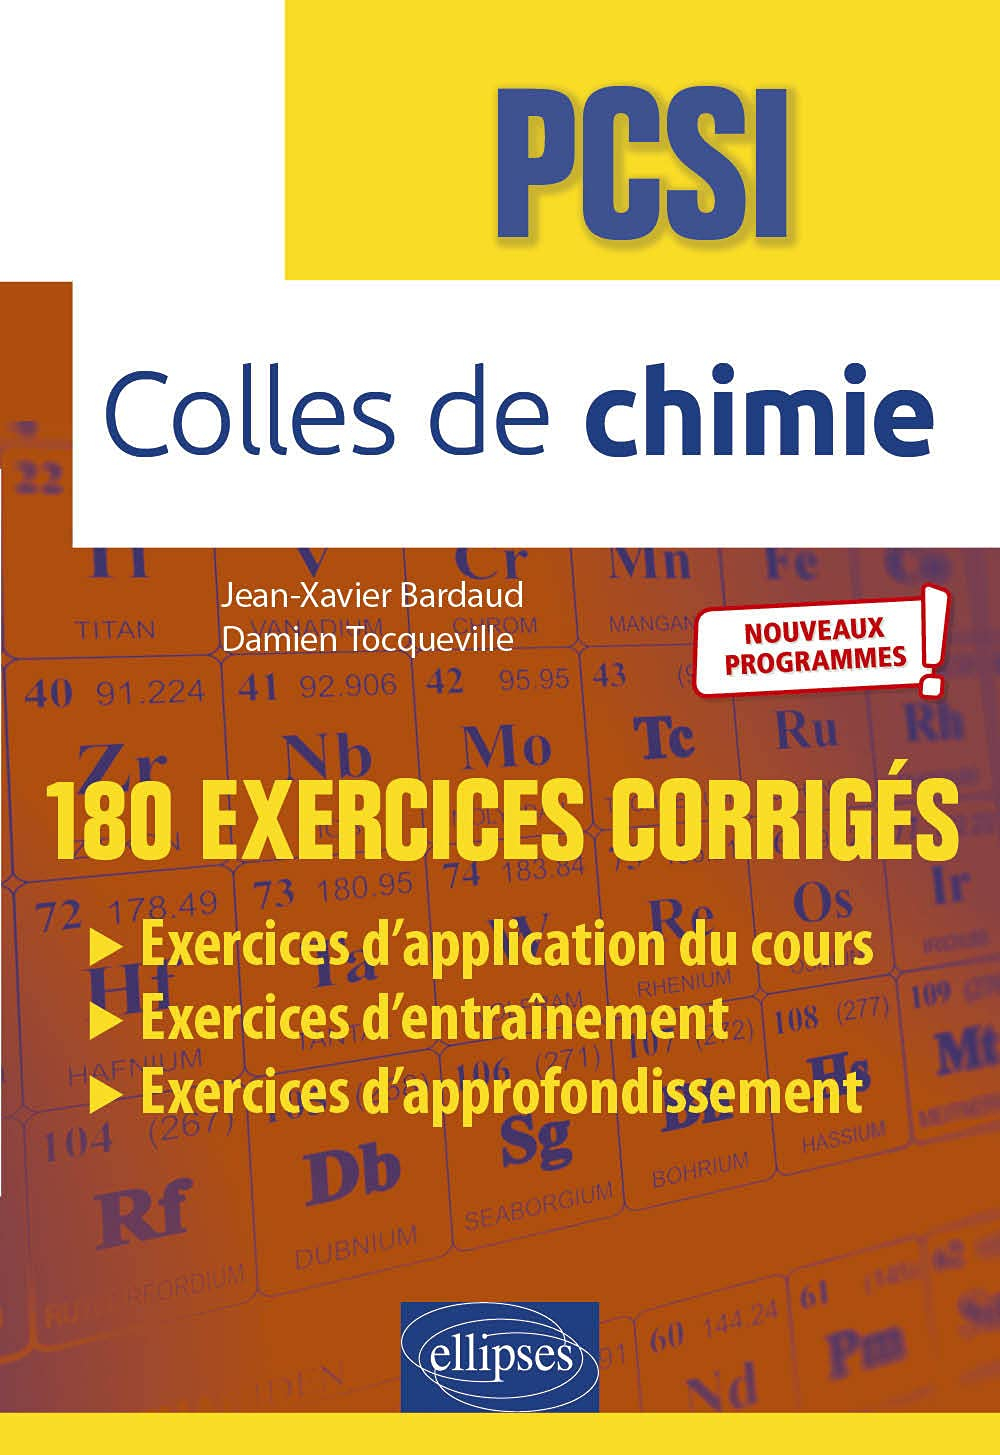 Colles de chimie, PSCI : 180 exercices corrigés : nouveaux programmes